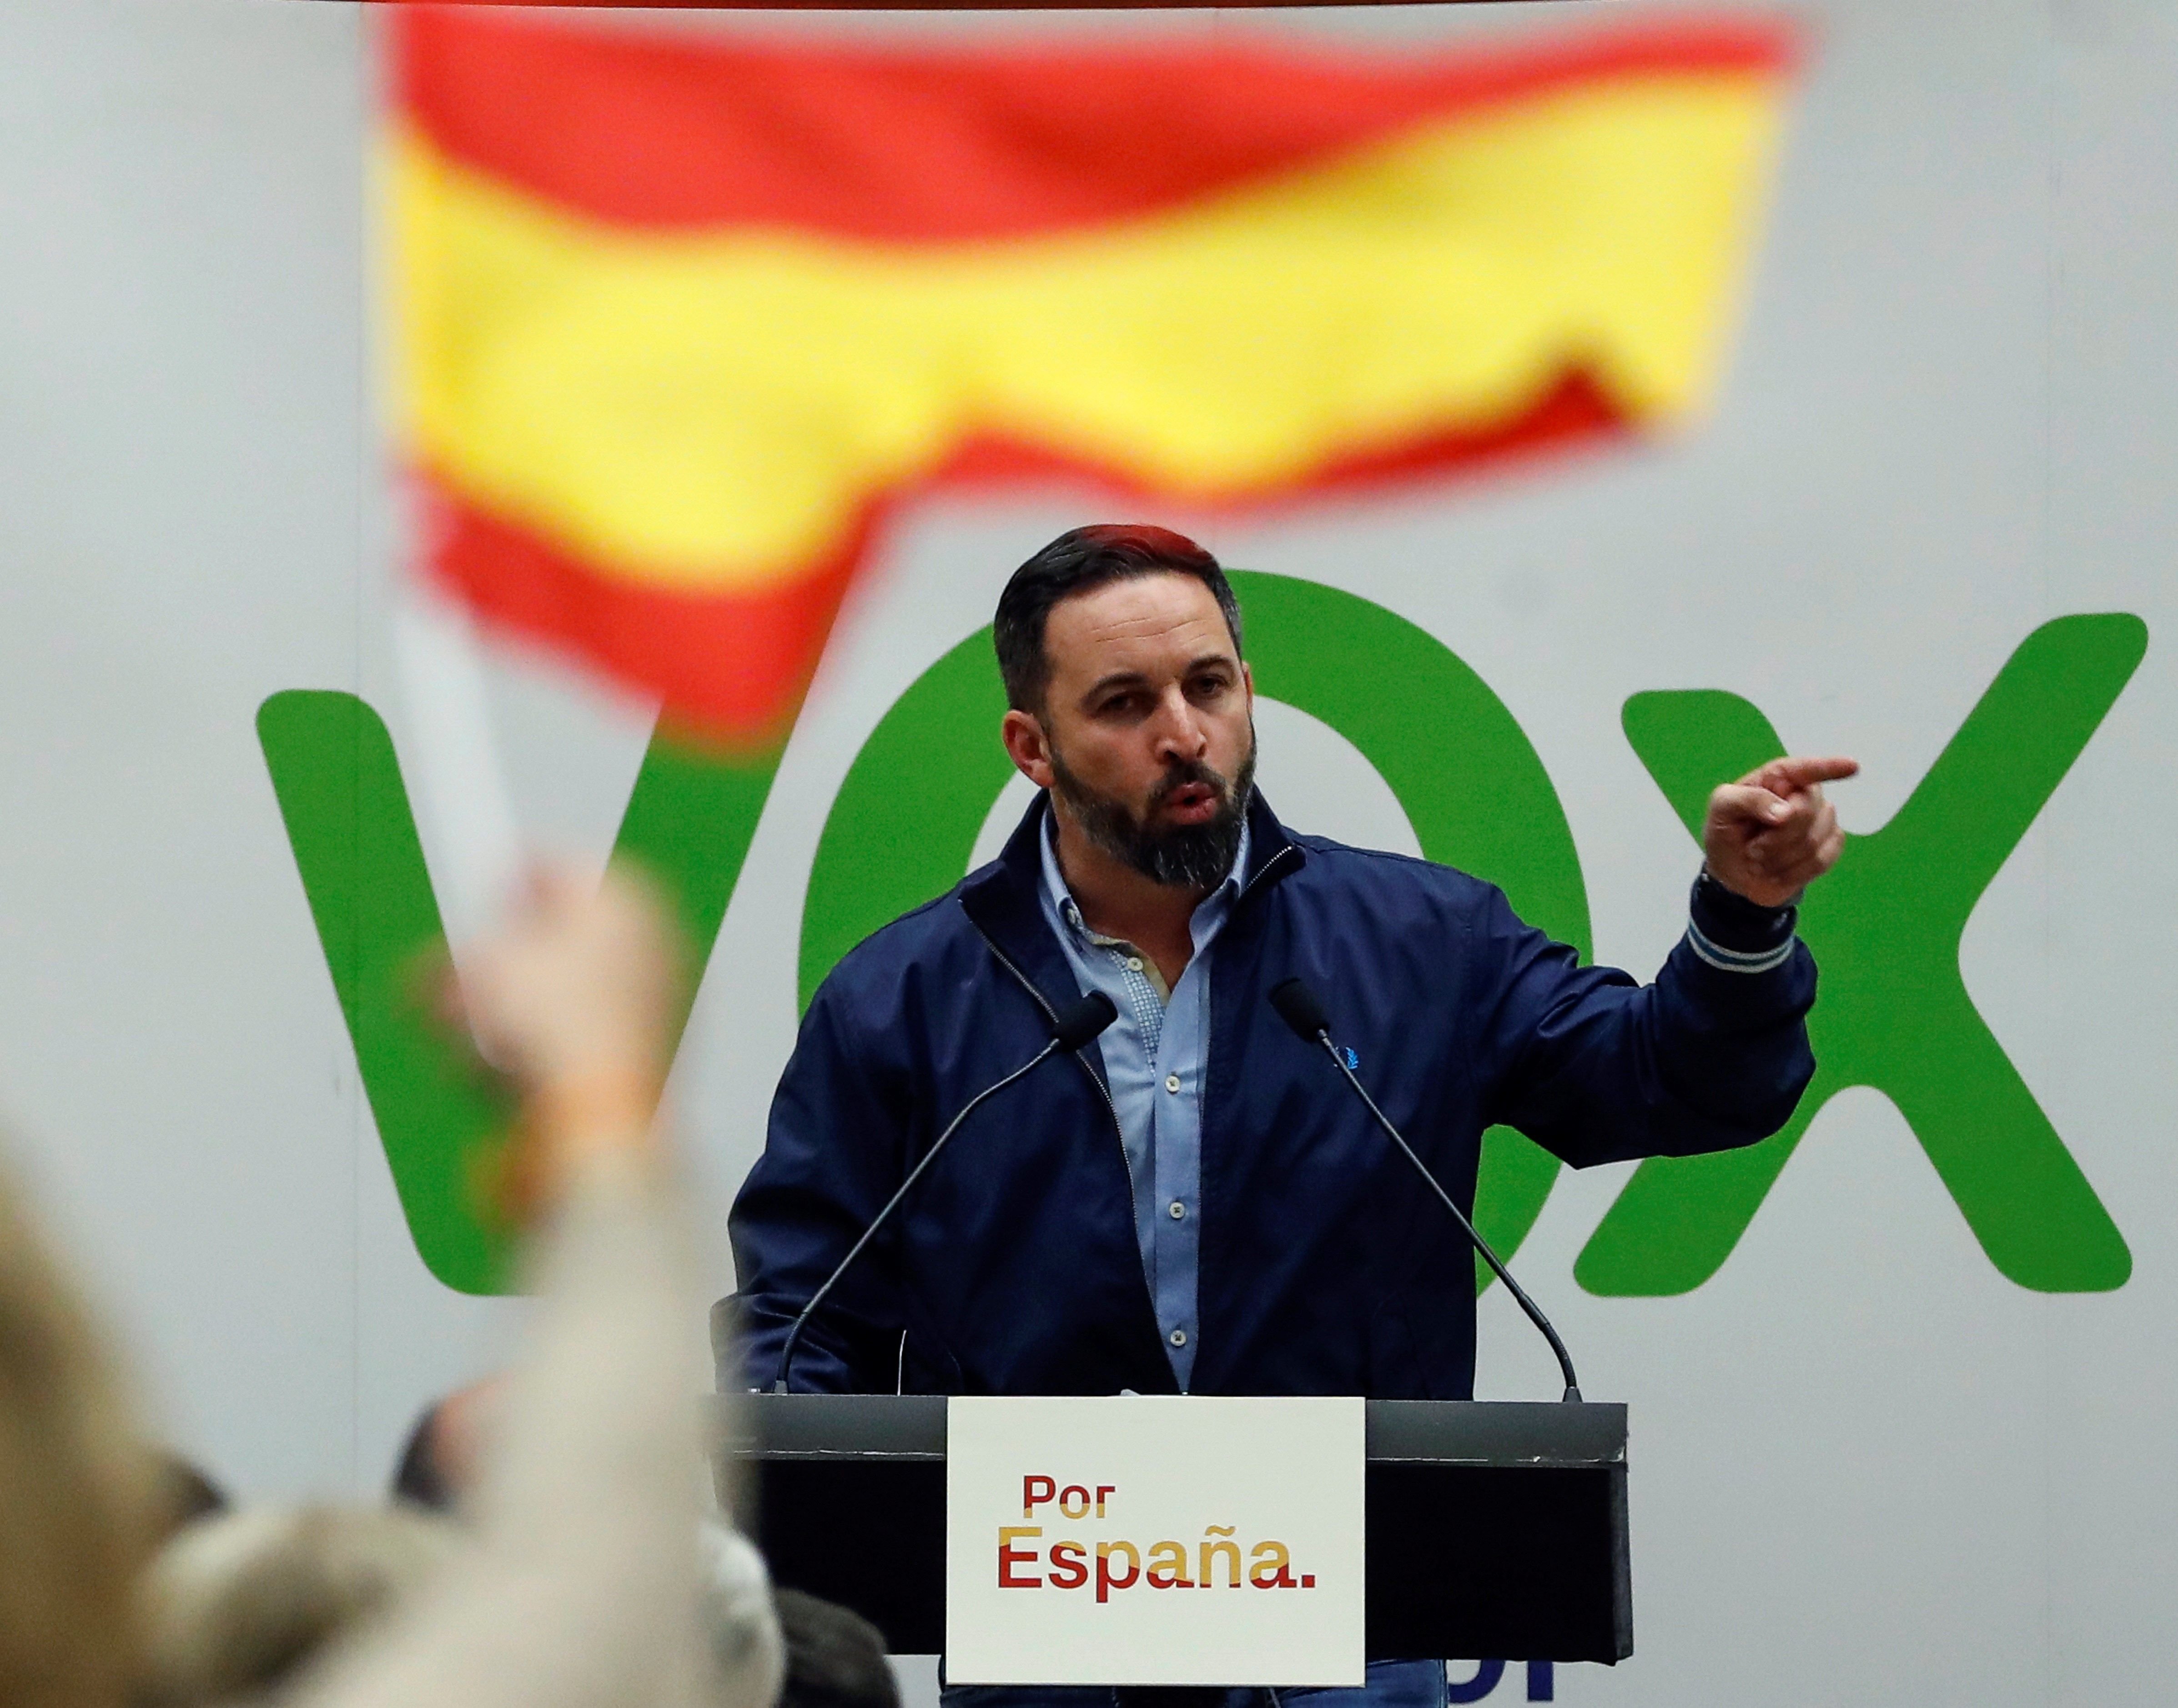 ¿Crees que la prioridad es evitar un gobierno de ultraderecha en Madrid?